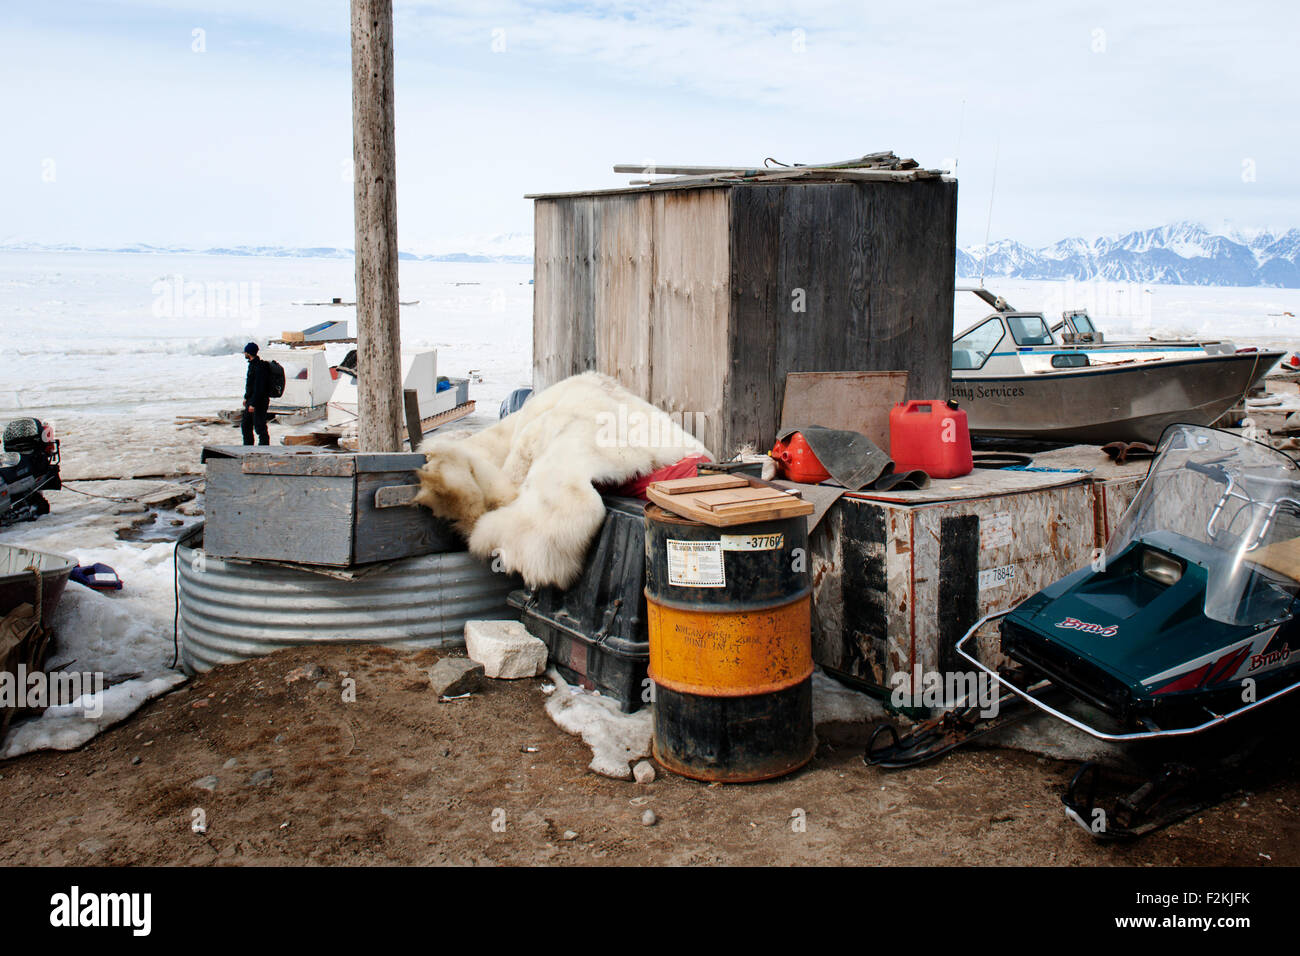 Eisbär (Ursus Maritimus) ausblenden gedumpten in Müll, Pond Inlet, Nunavut, Kanada. Stockfoto